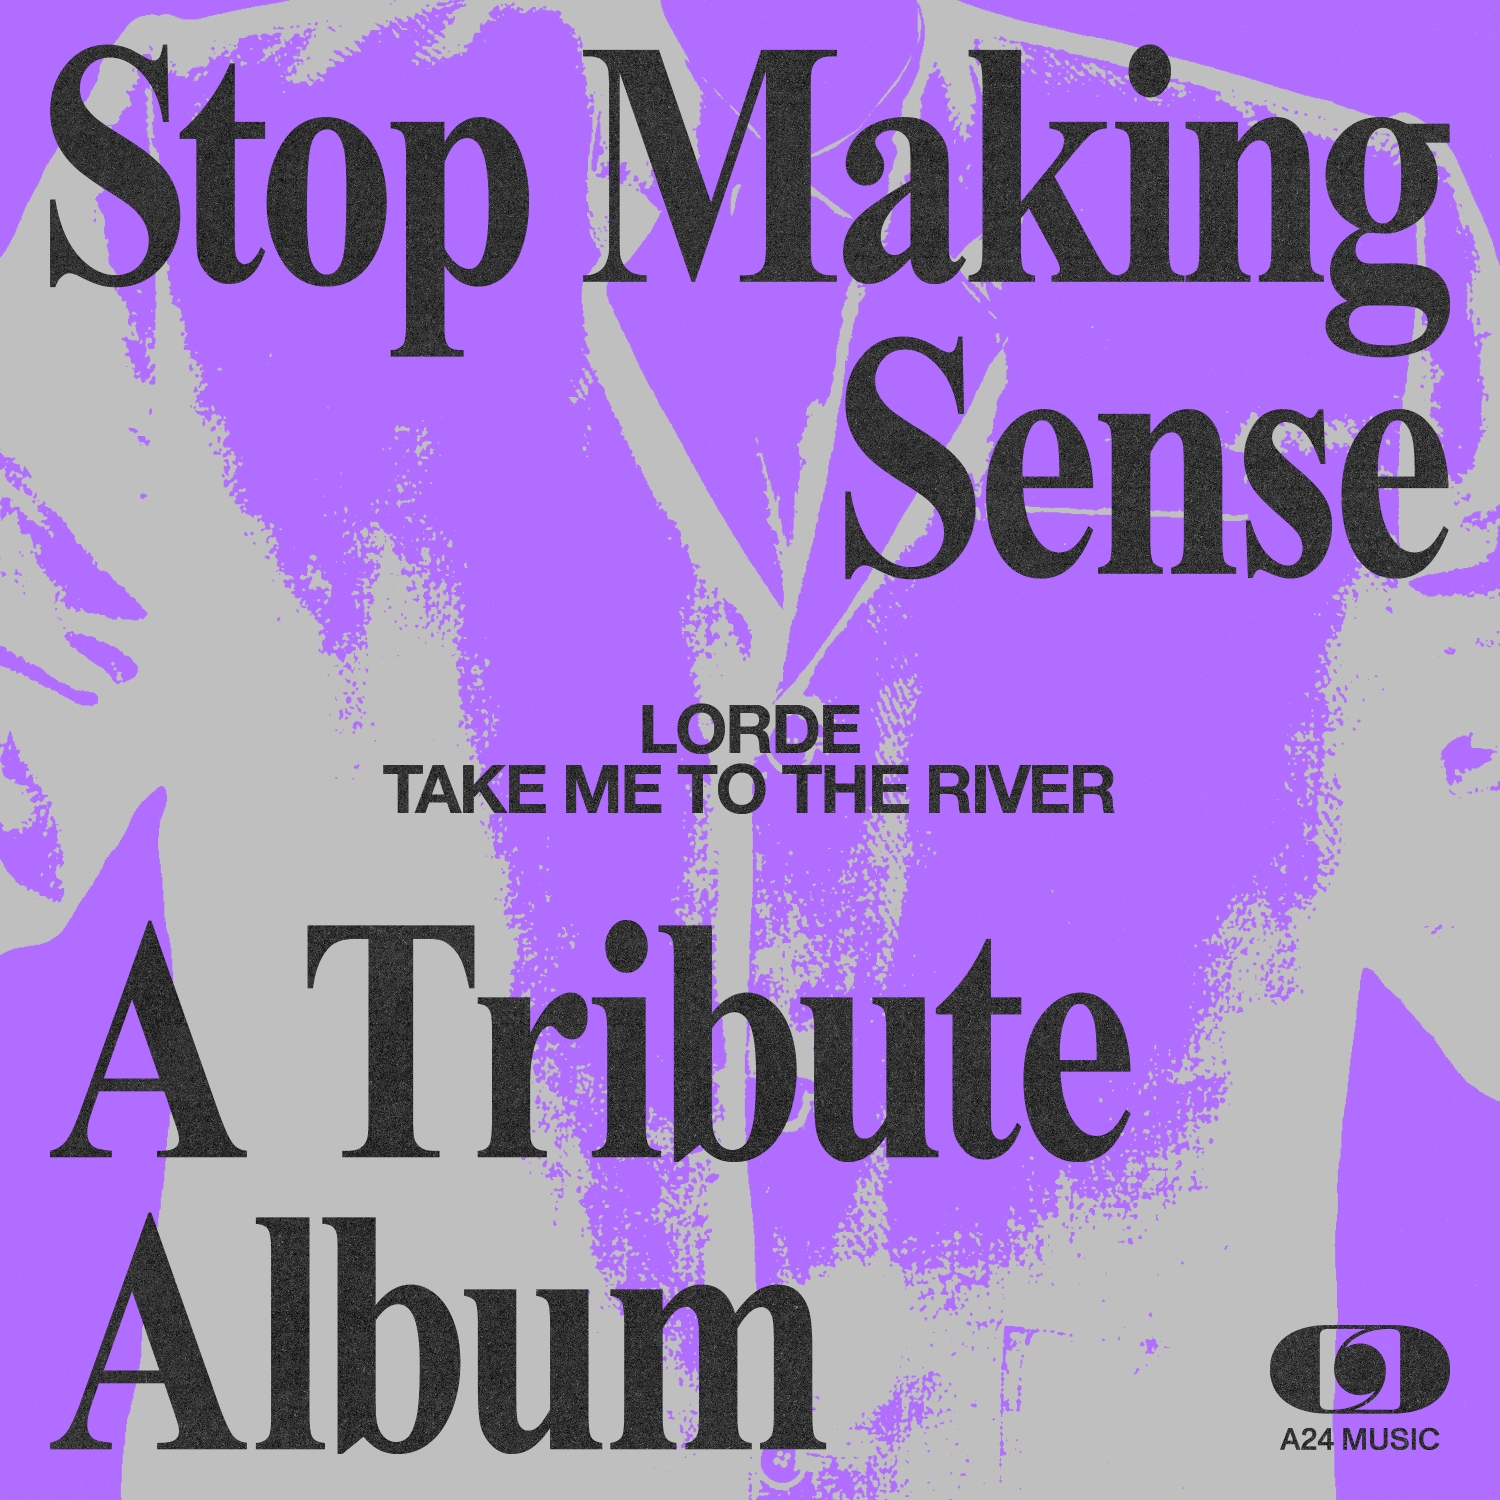 팝송해석잡담::로드(Lorde) "Take Me To The River", 토킹 헤즈(Talking Heads) 기대감 부활